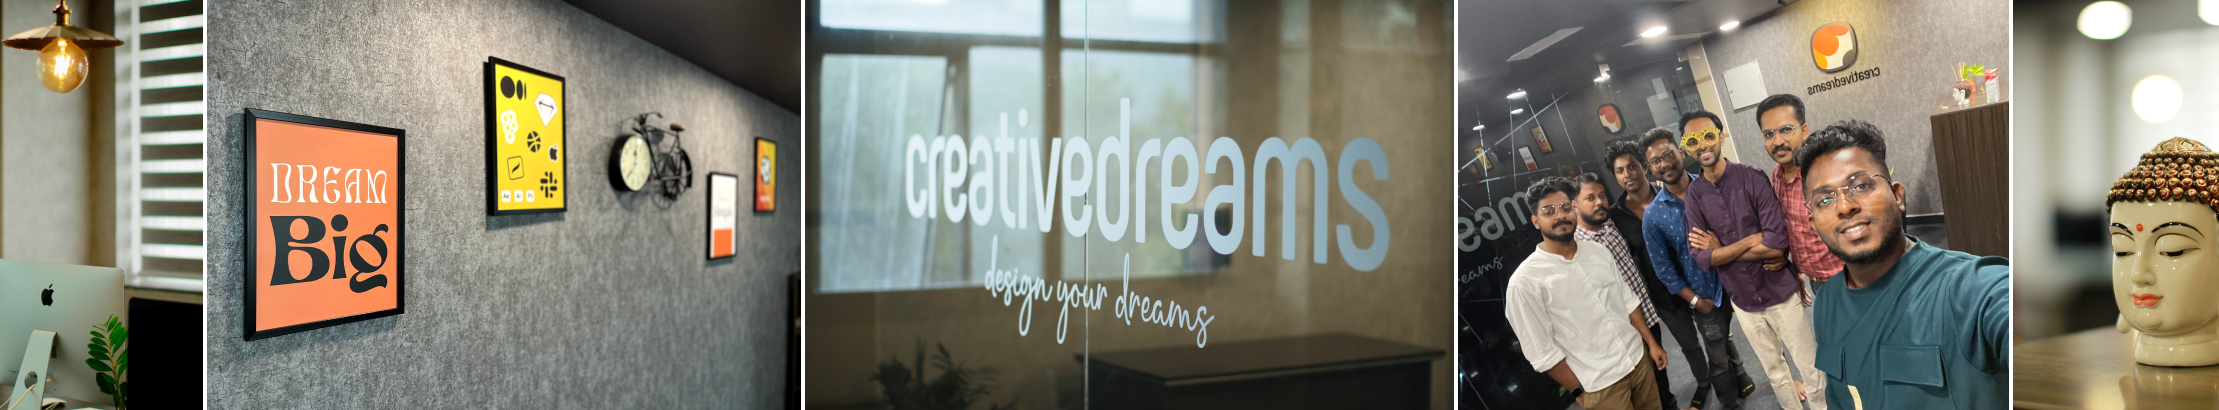 Creative Dreamss profilbanner